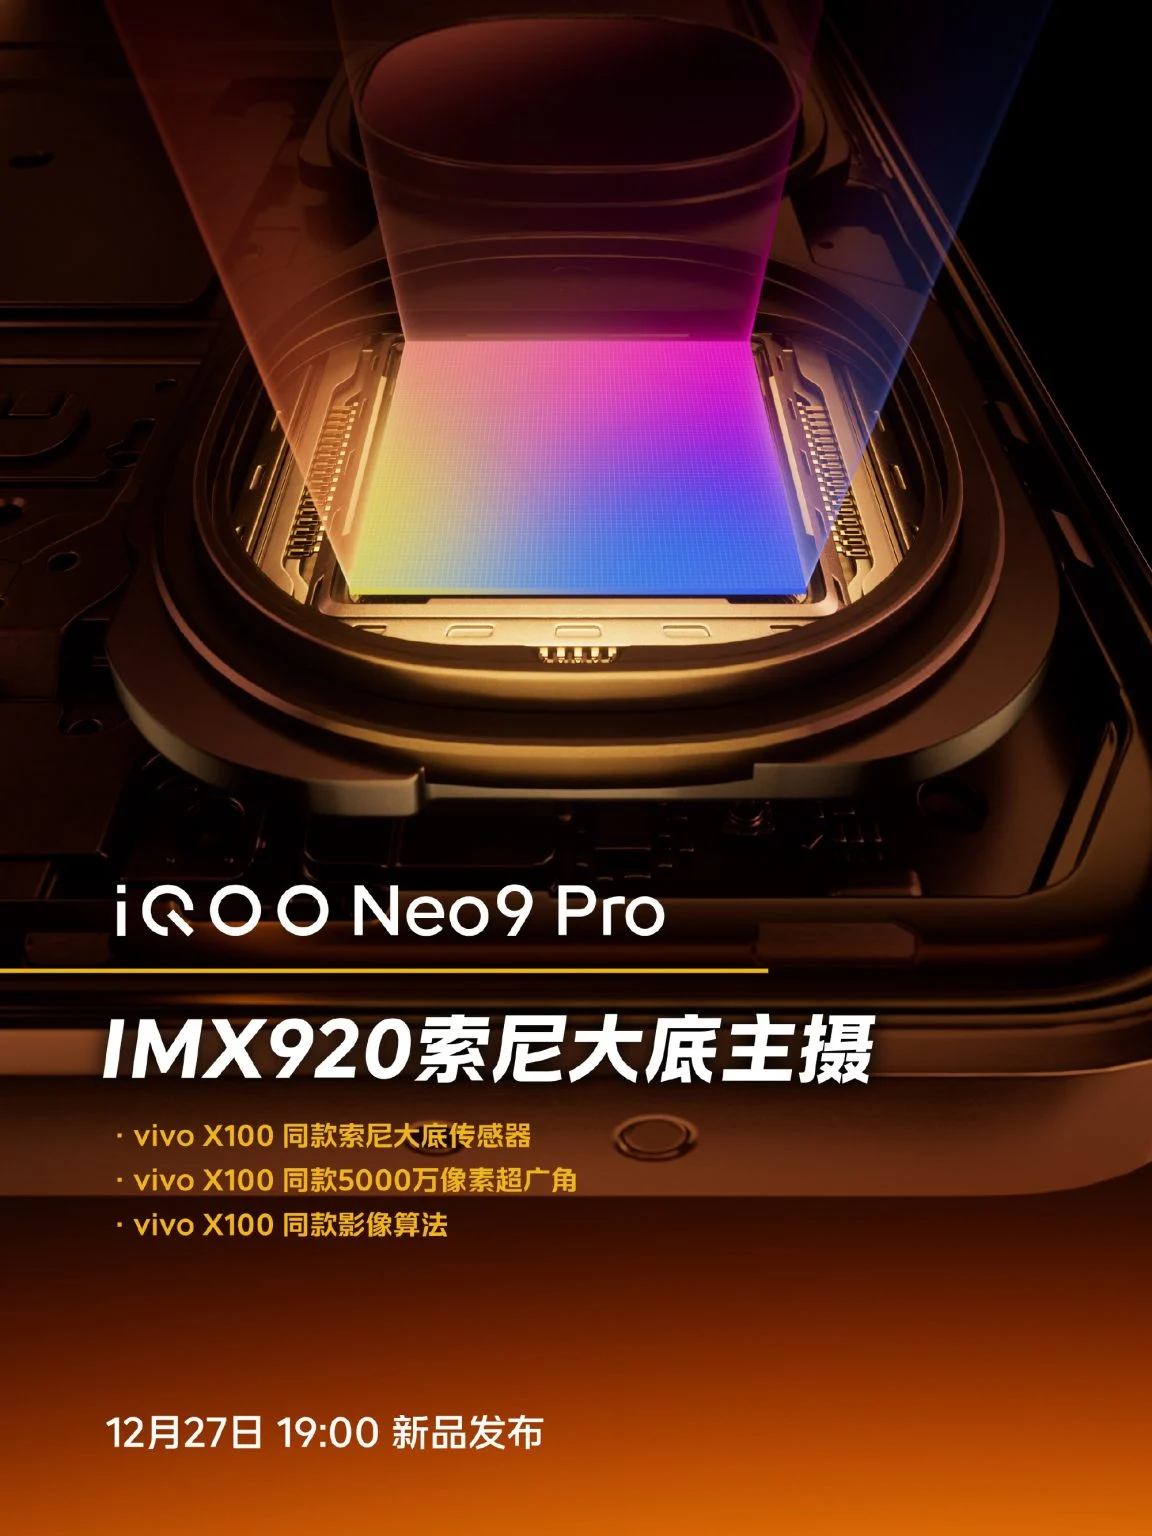 iQOO Neo 9 Pro özellikleri